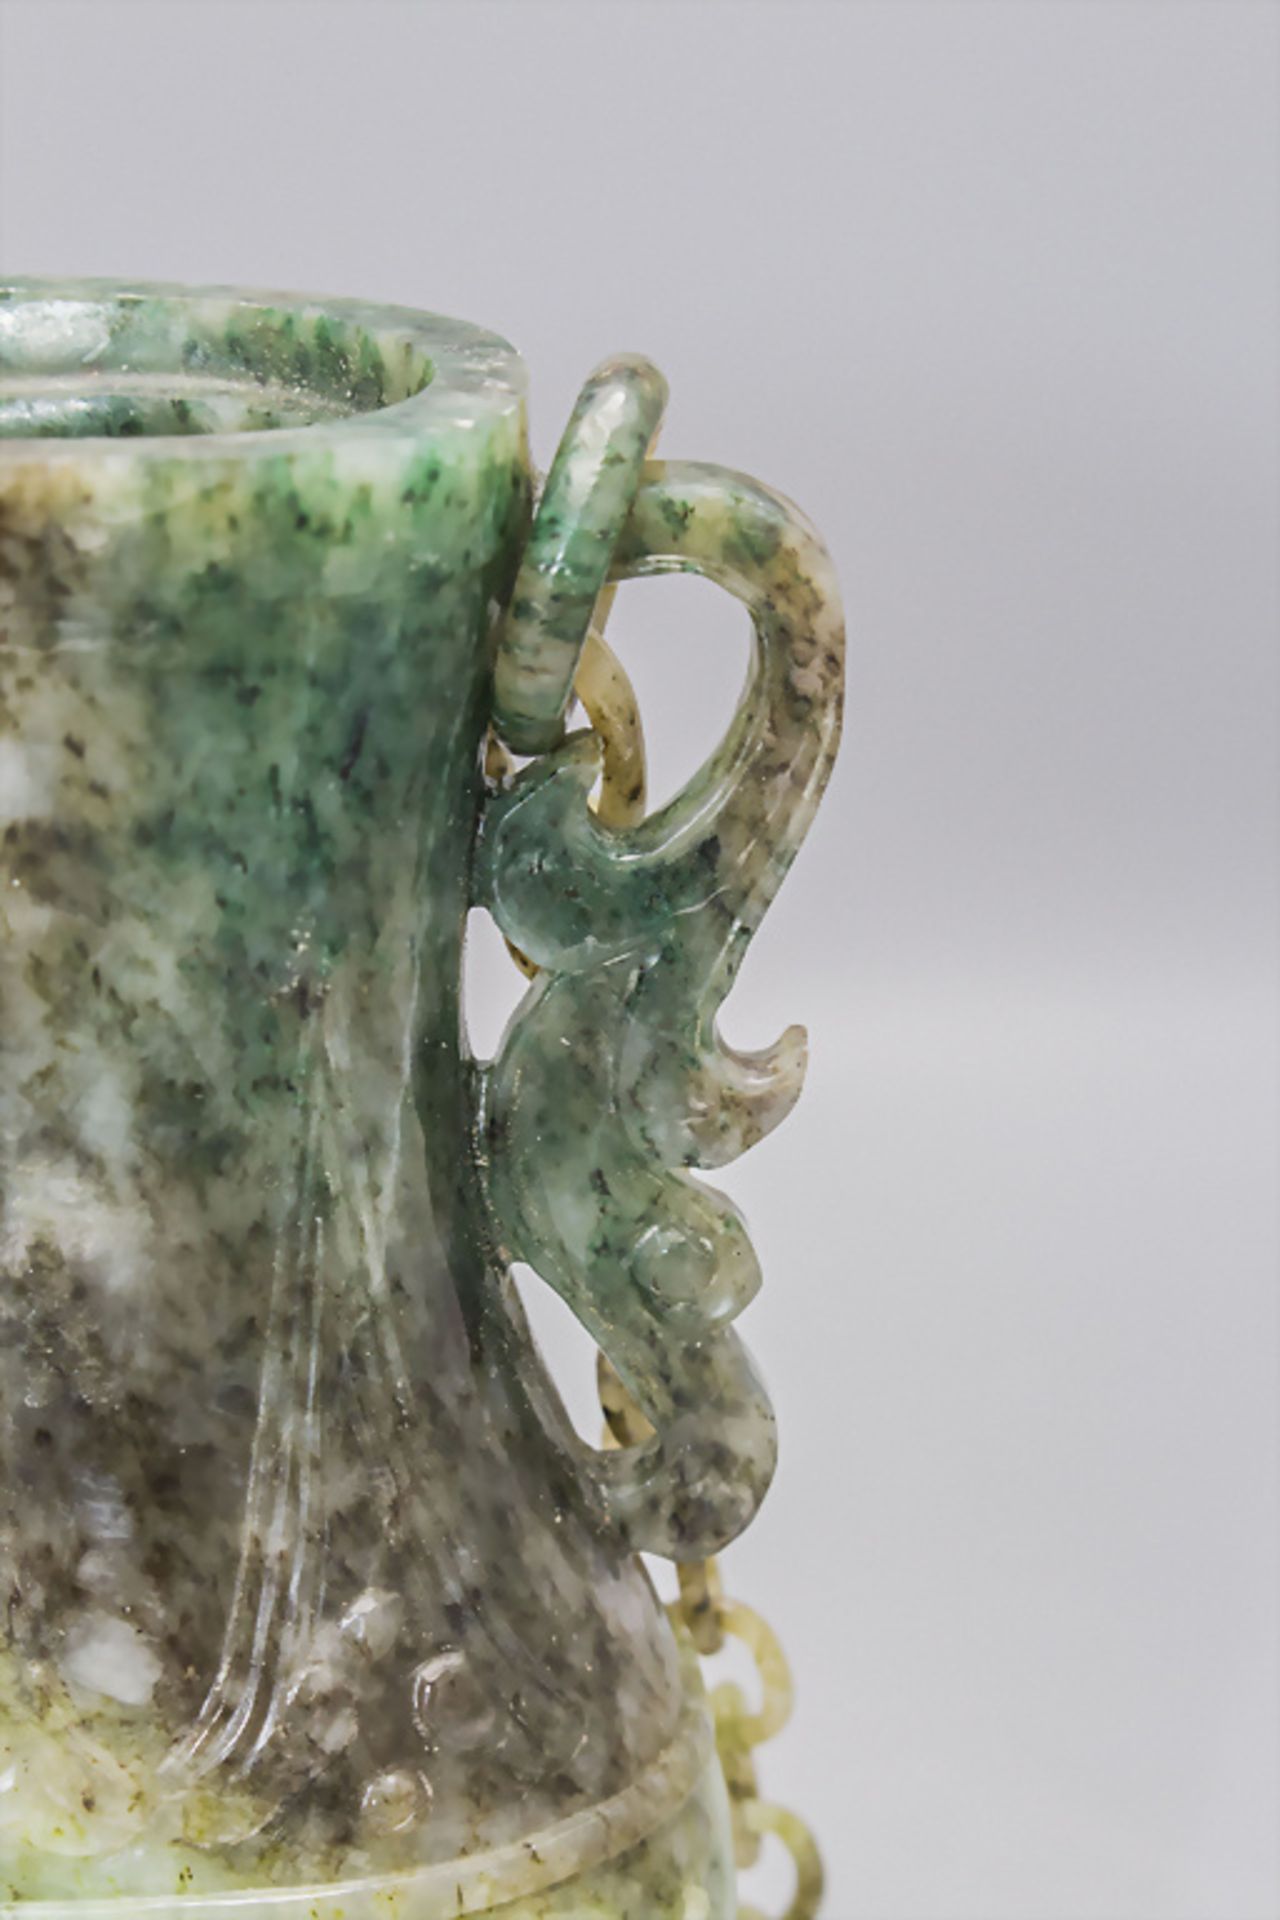 Feine Jade-Deckelvase an Hängekette / A fine jade lidded vase on a chain, China, um 1920 - Image 6 of 10